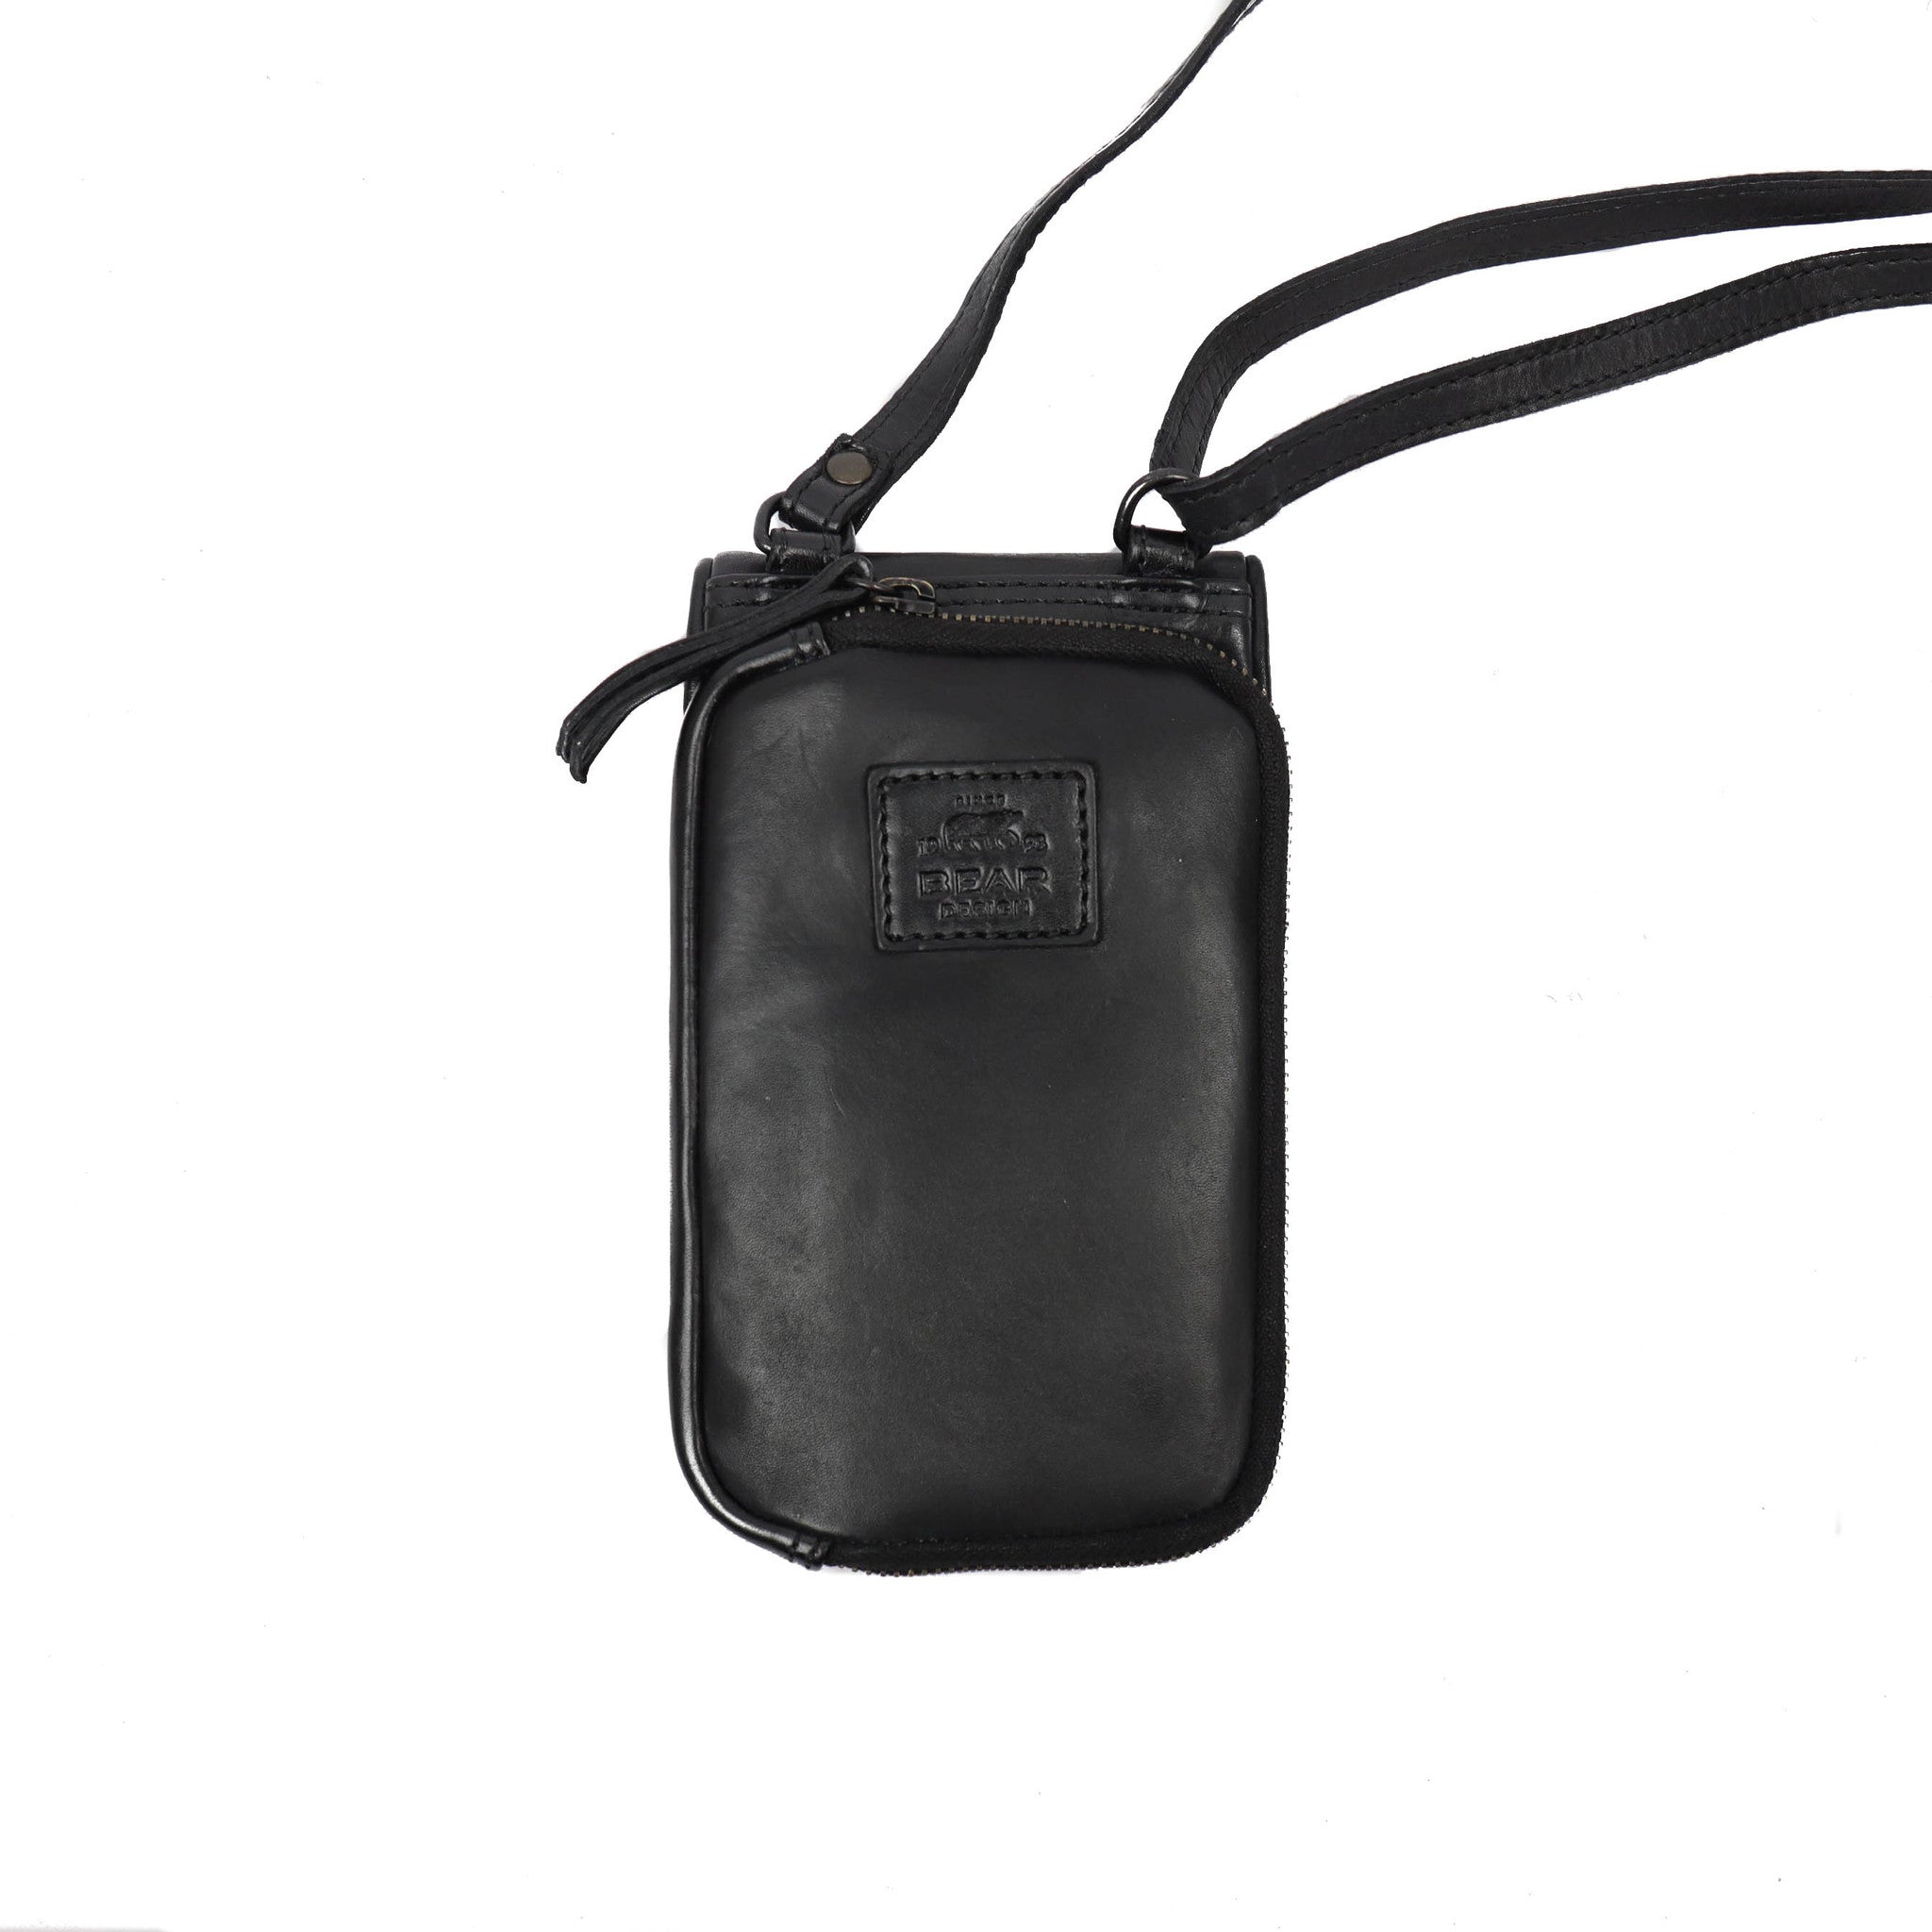 Phone bag 'Elske' black - CL 41579